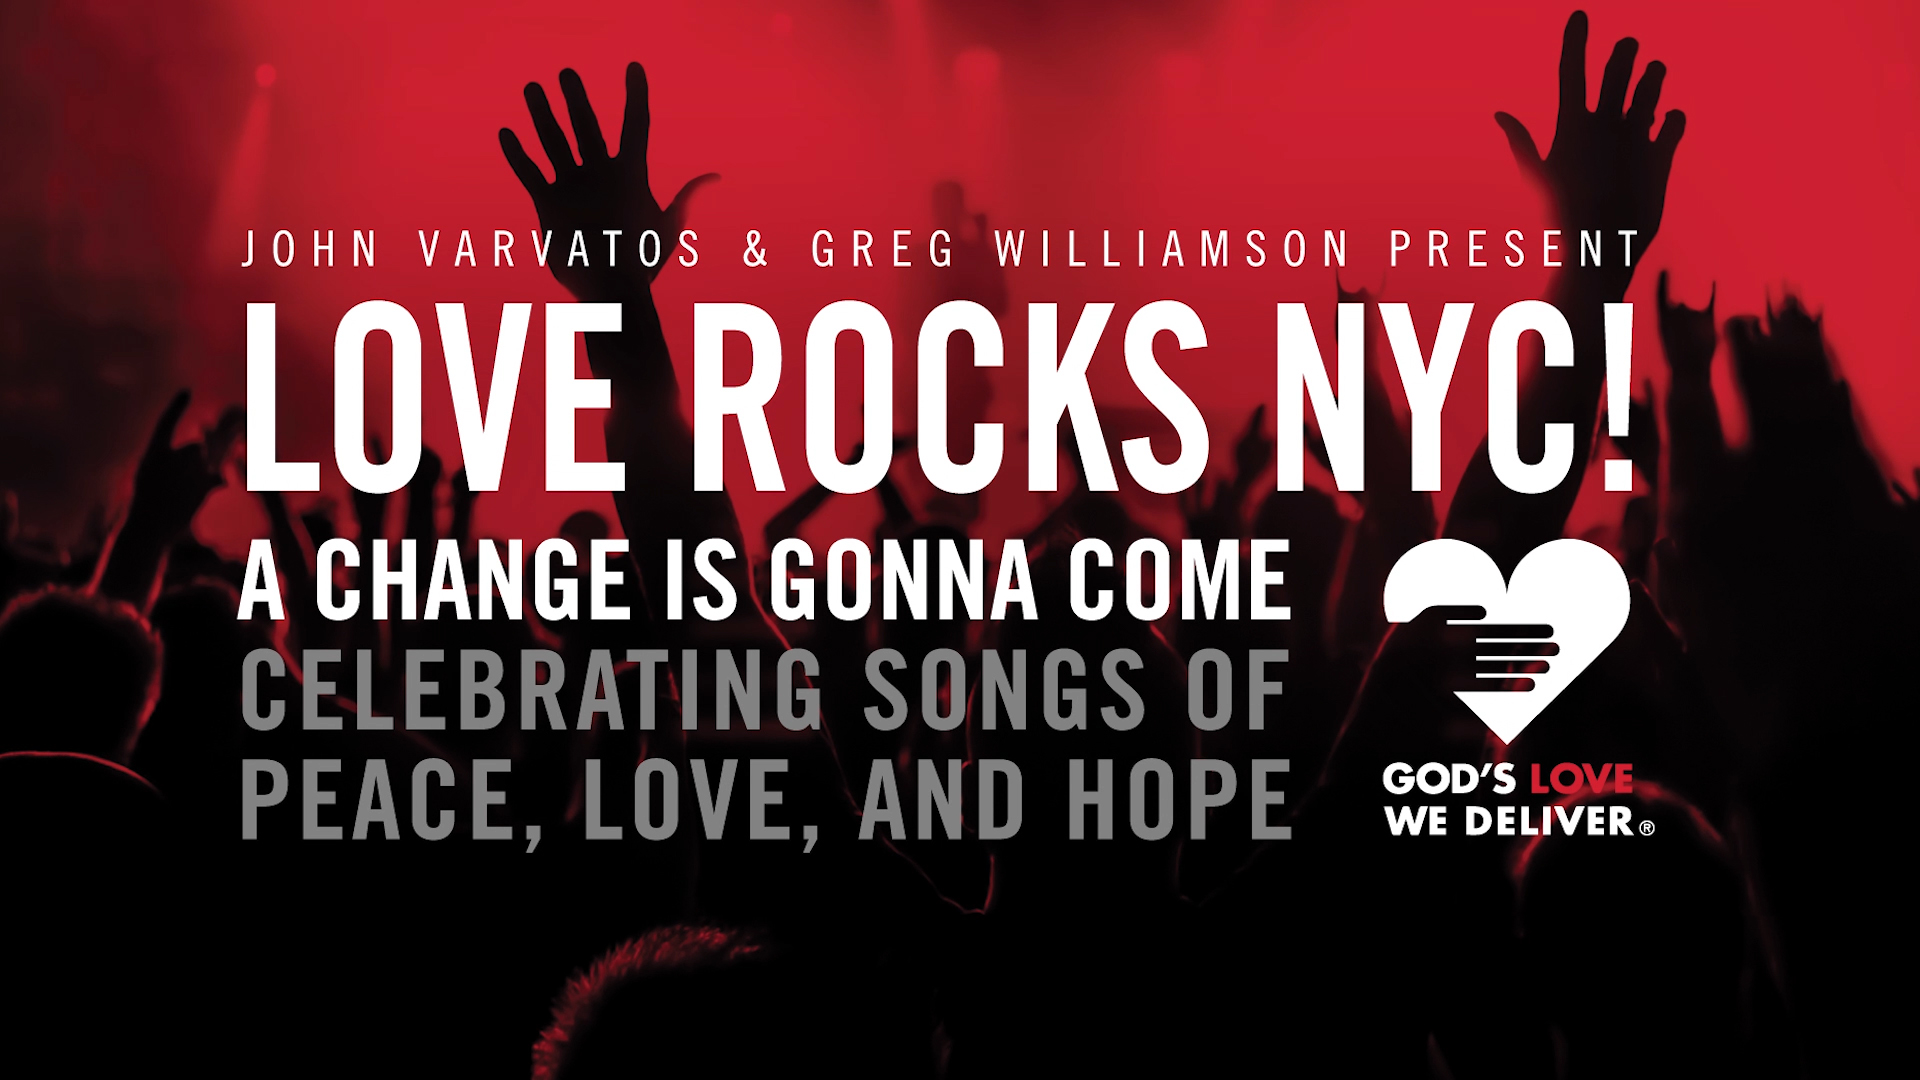 LOVE ROCKS NYC!